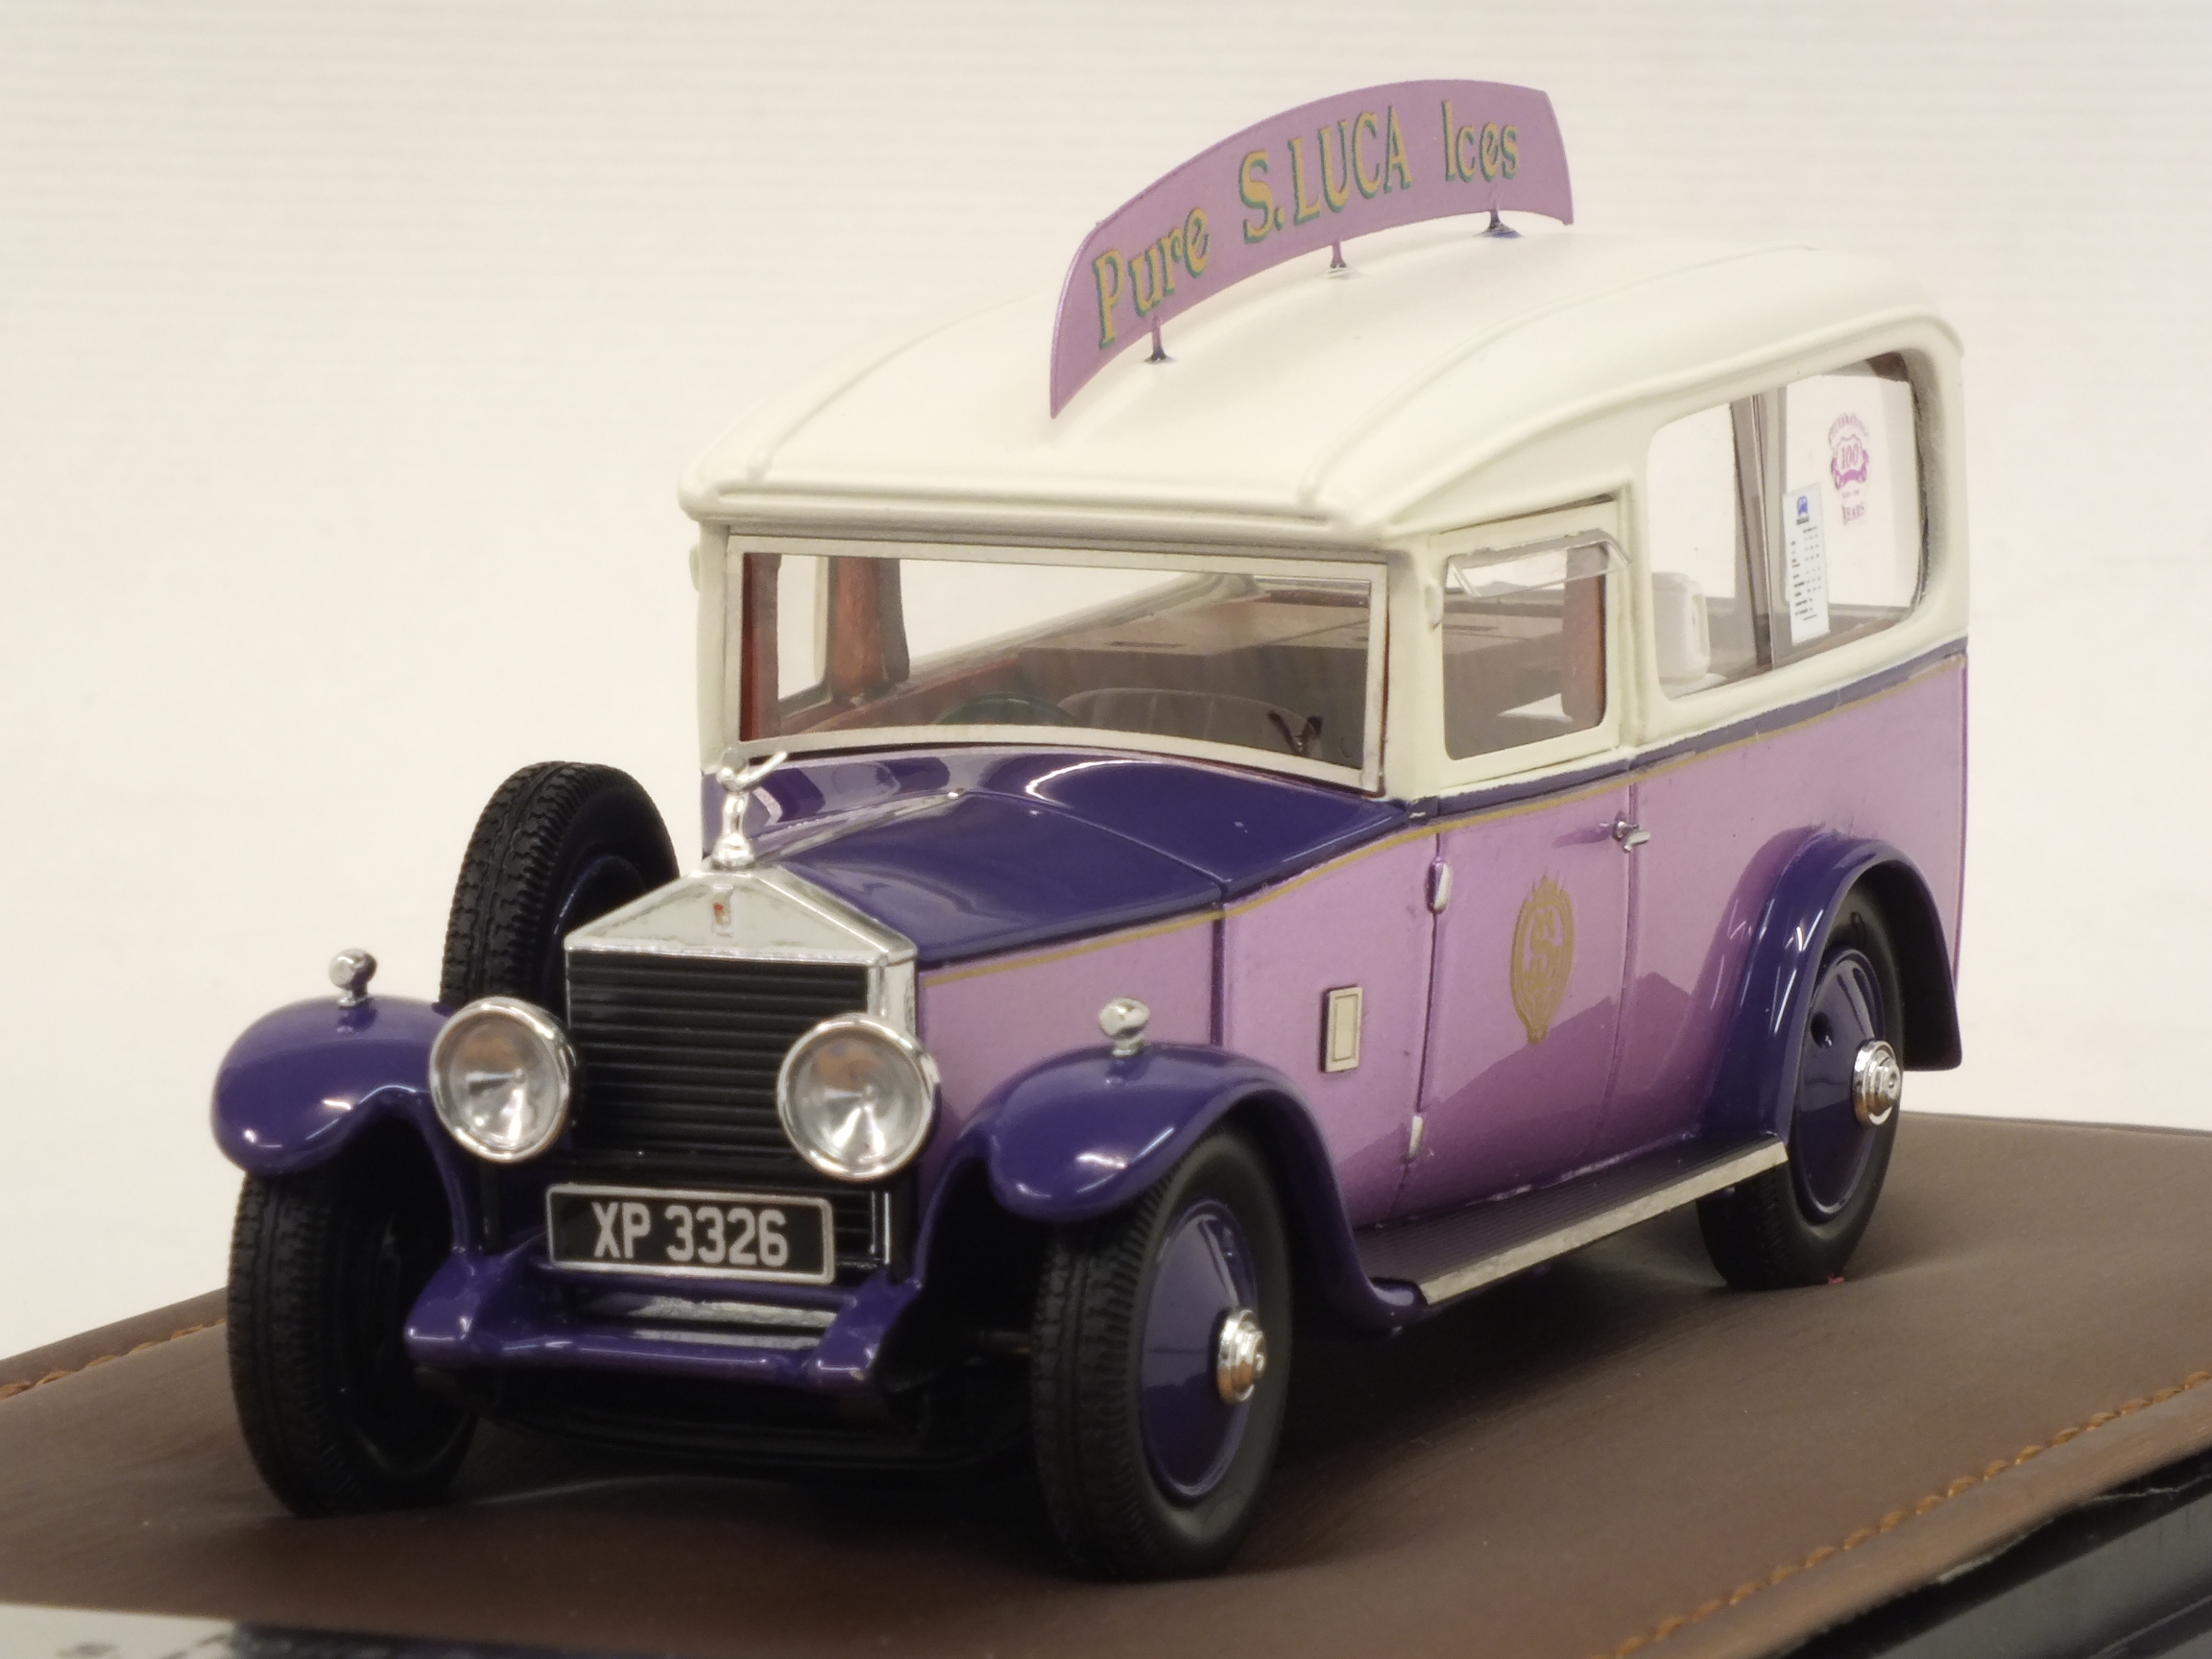 Rolls Royce 20 HP S.Luca Ice Cream Van 1923 by glm-models